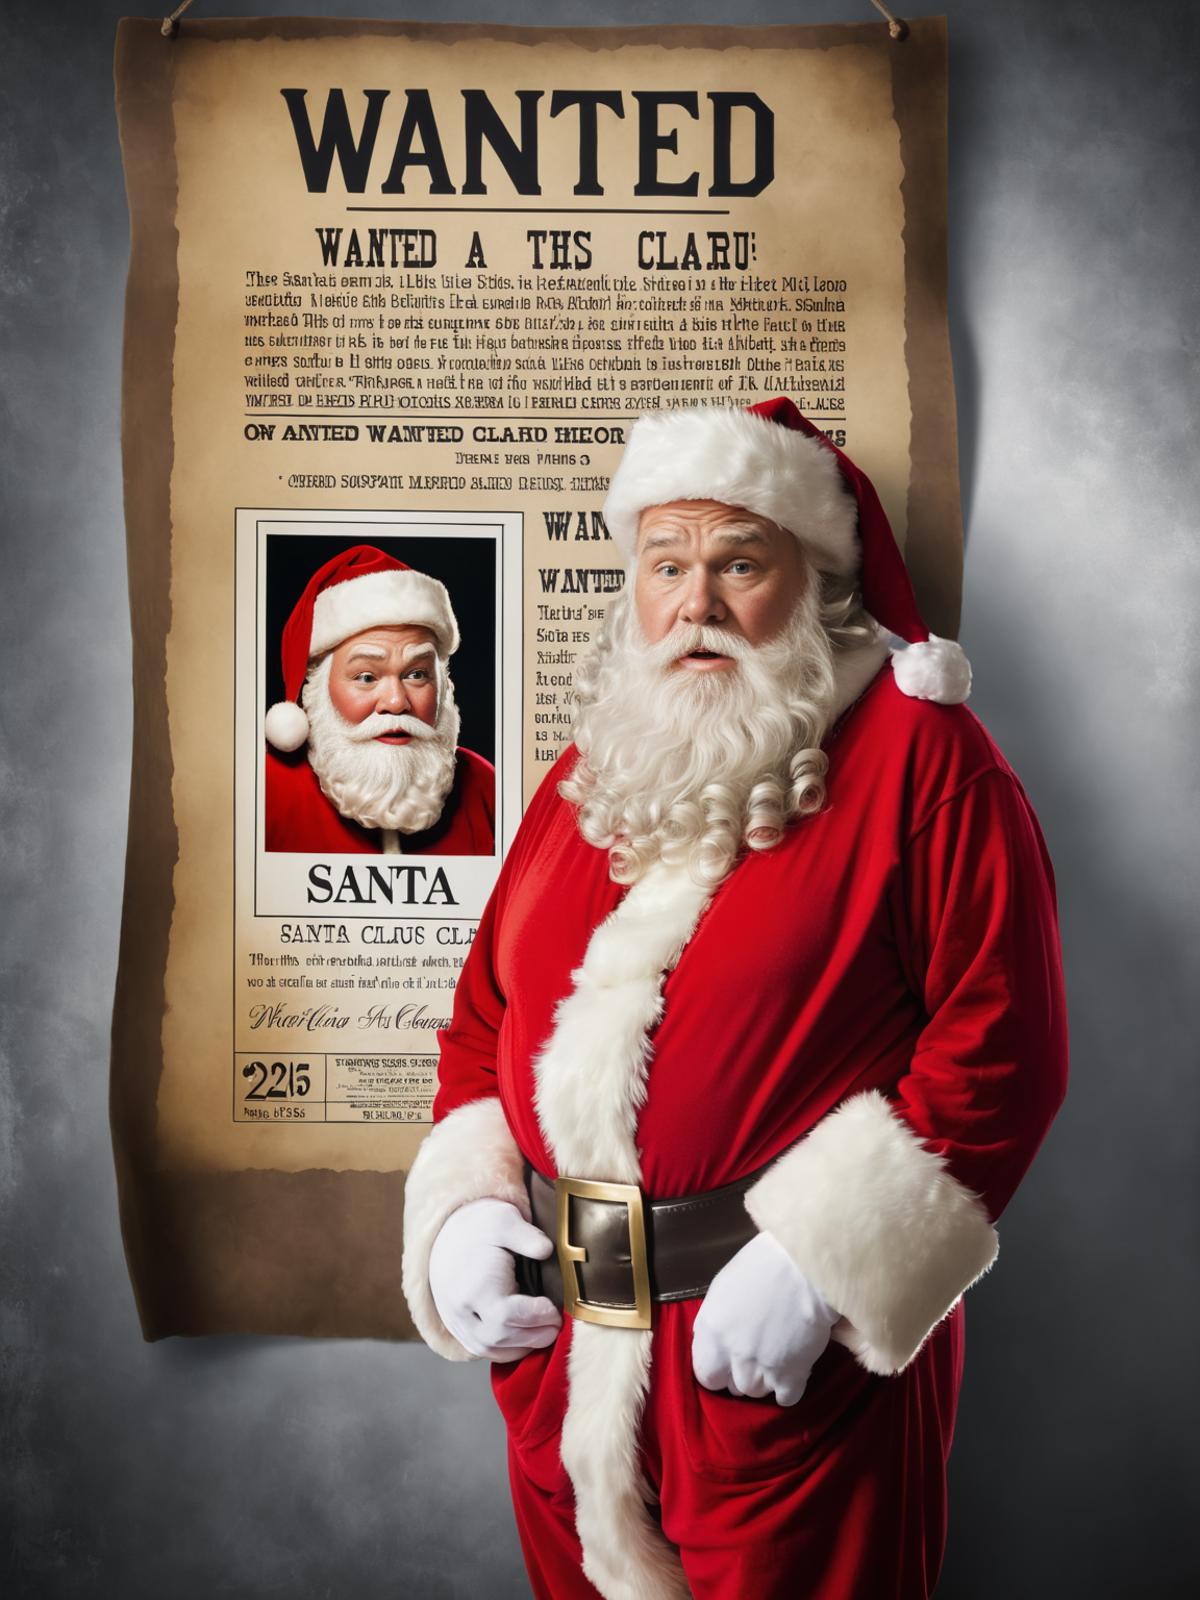 A wanted poster of Santa Claus next to a Santa Claus image.